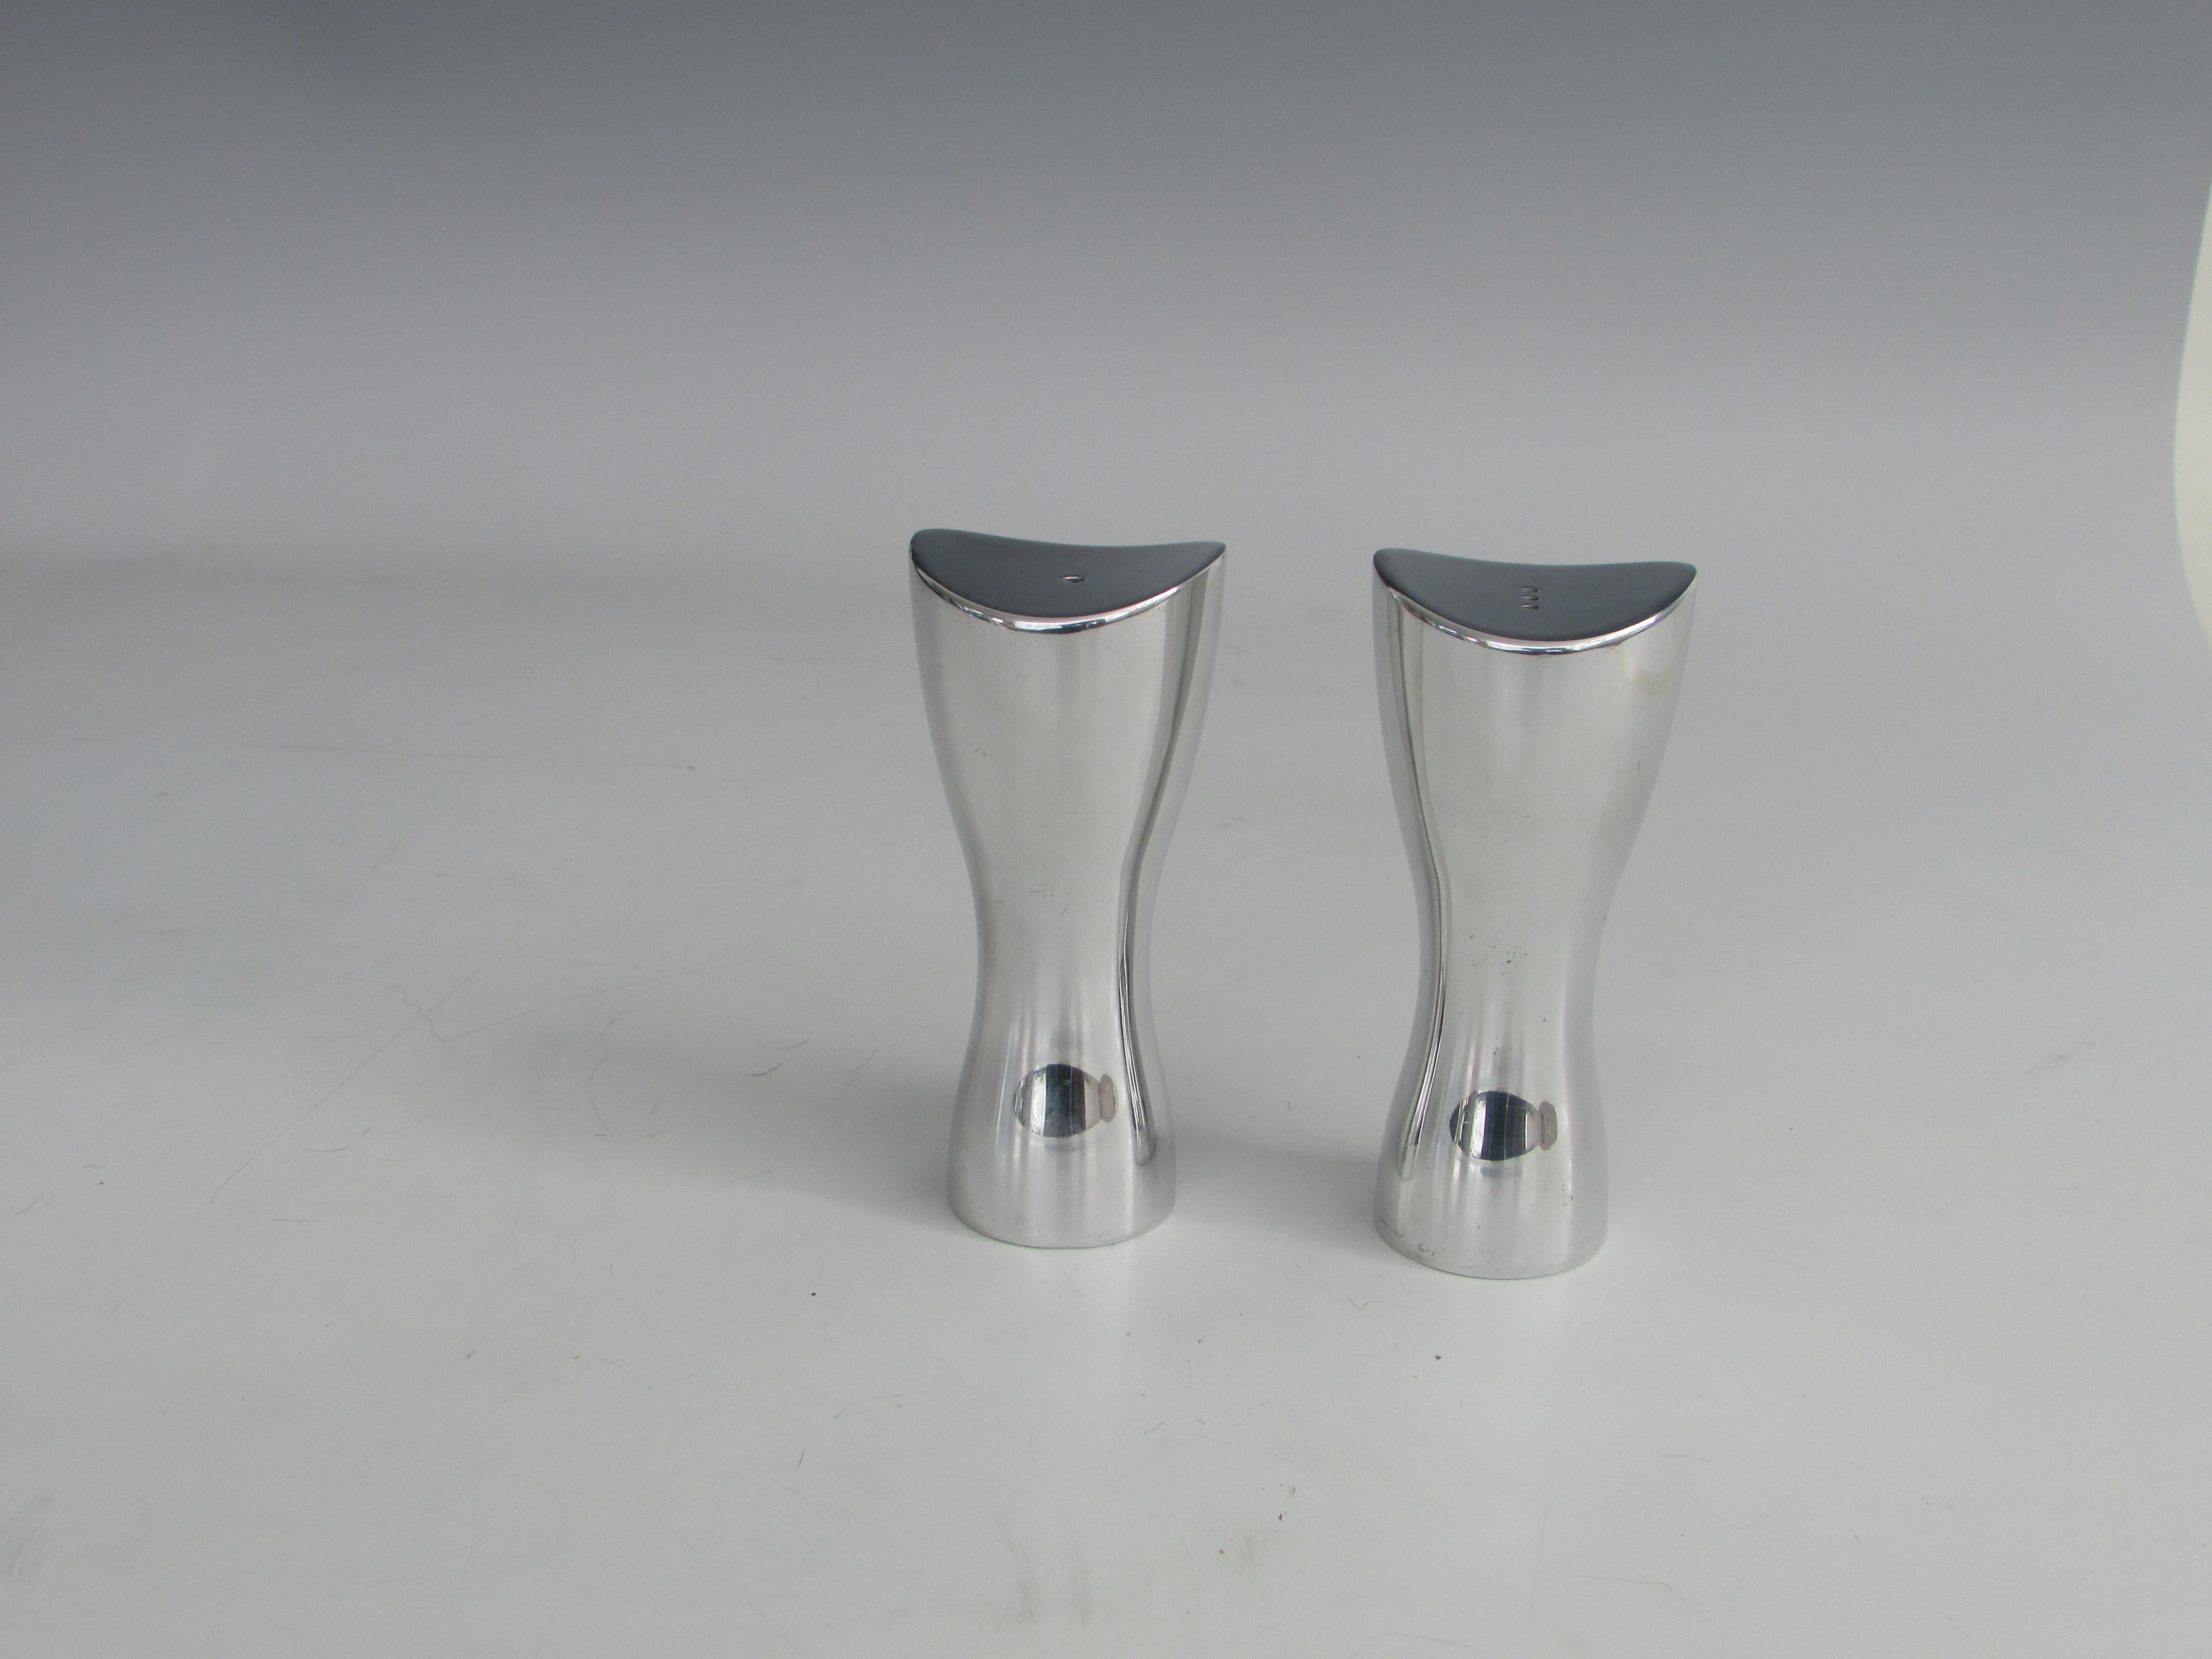 Paire de salières-poivrières en aluminium poli en forme de verre d'heure stylisé. Marqué du Label Nambe Studio.